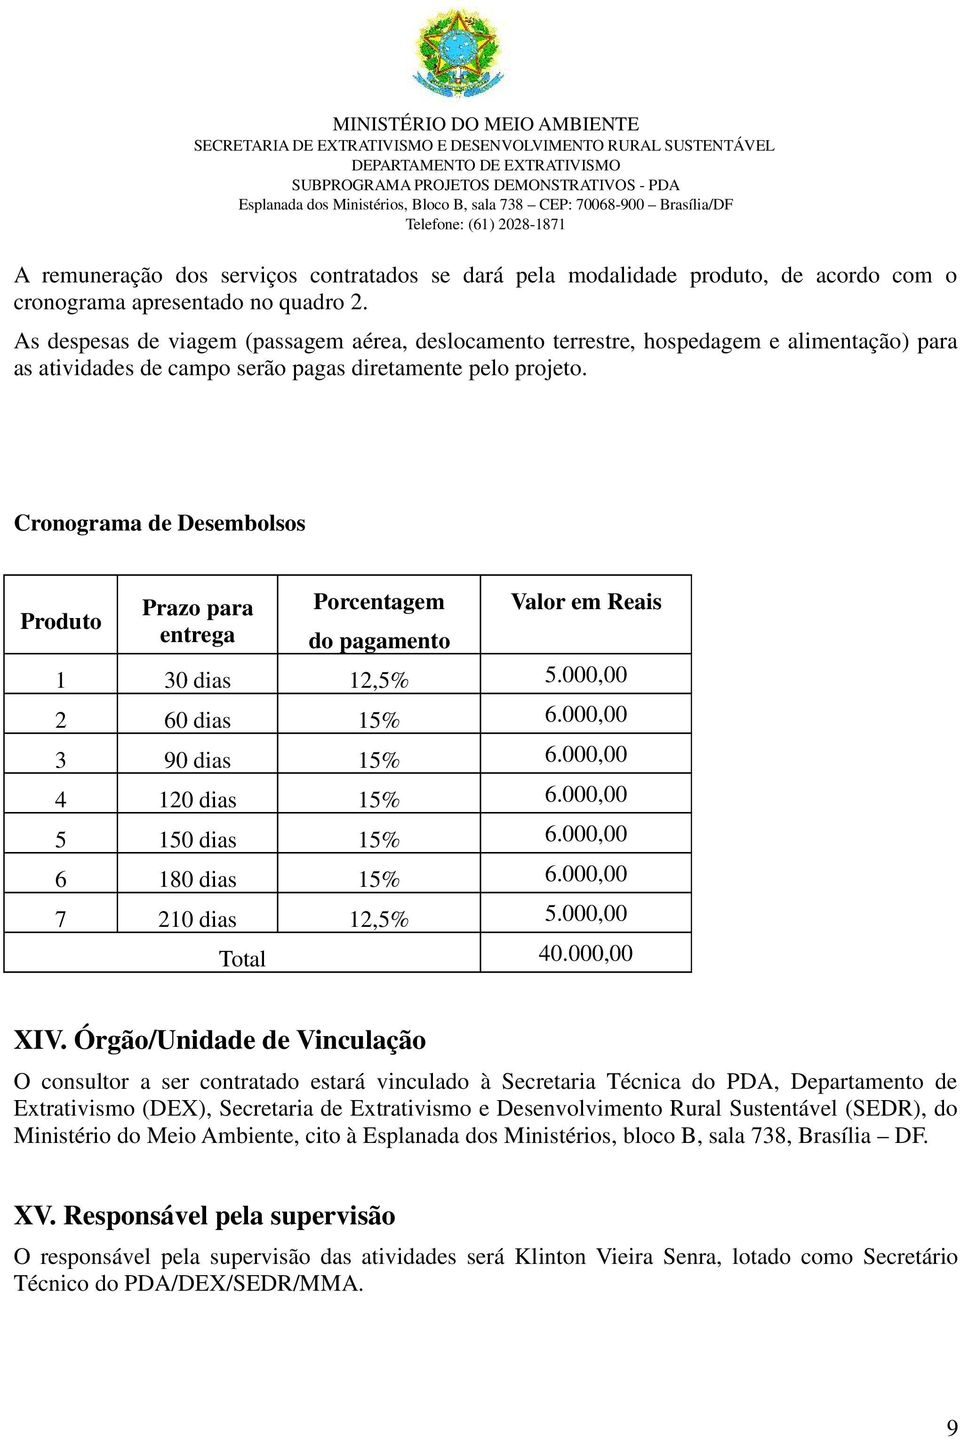 Cronograma de Desembolsos Produto Prazo para entrega Porcentagem do pagamento Valor em Reais 1 30 dias 12,5% 5.000,00 2 60 dias 15% 6.000,00 3 90 dias 15% 6.000,00 4 120 dias 15% 6.